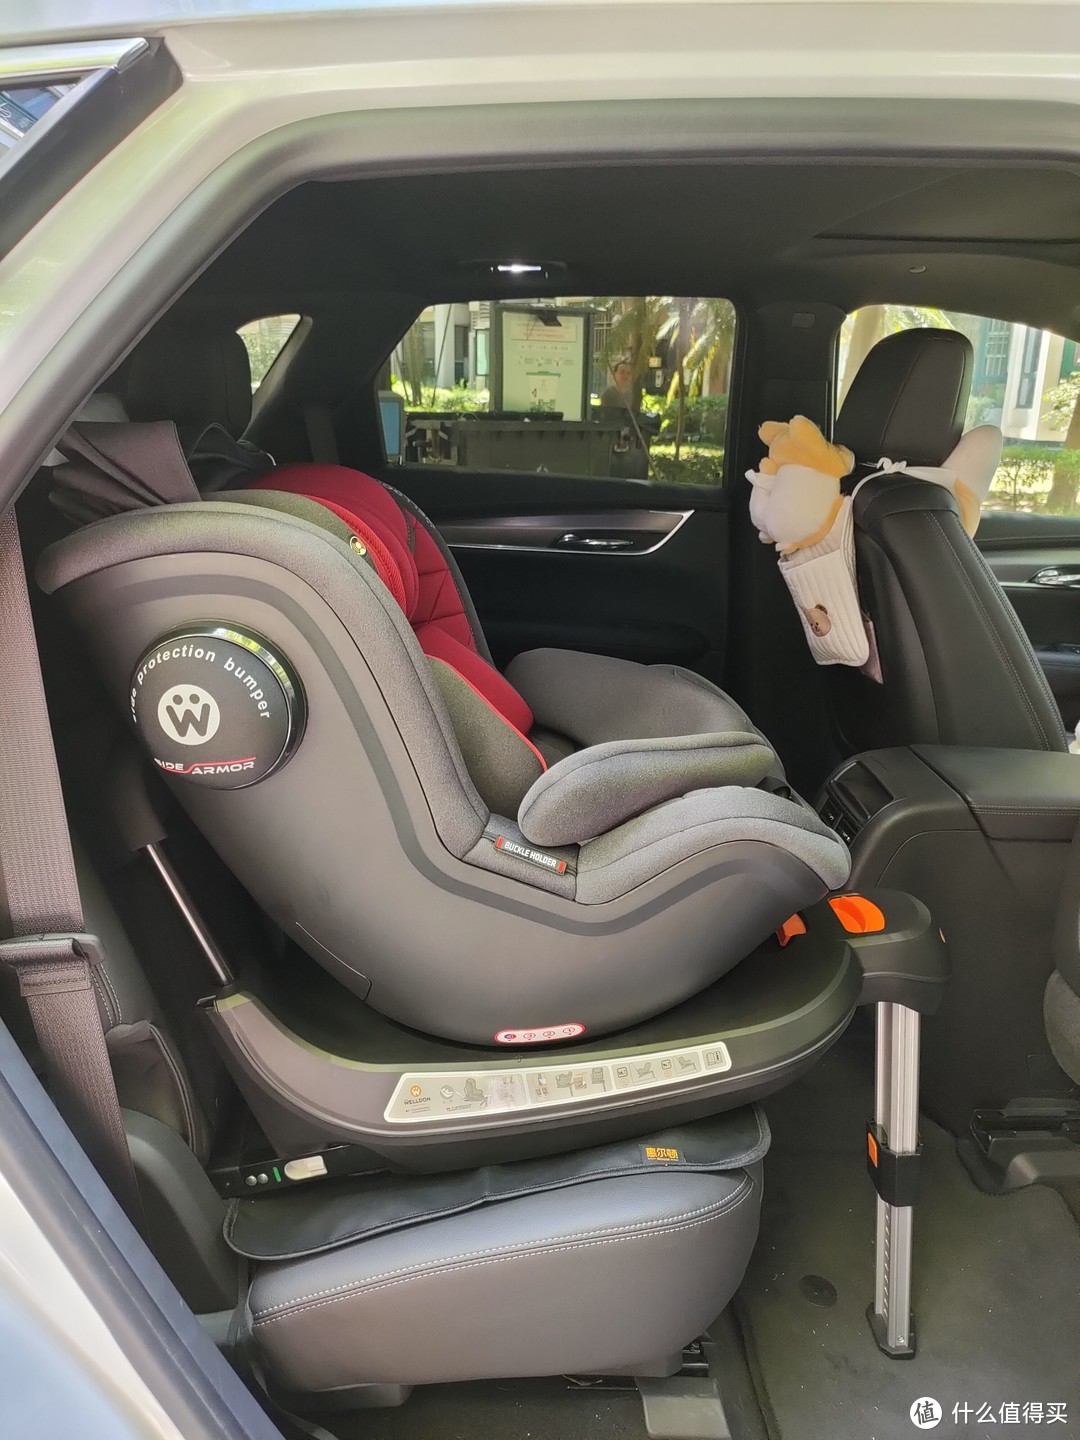 陪娃的快乐时光，安全呵护最重要：一个新晋奶爸选安全座椅的心路历程，惠尔顿安全座椅开箱和使用体验